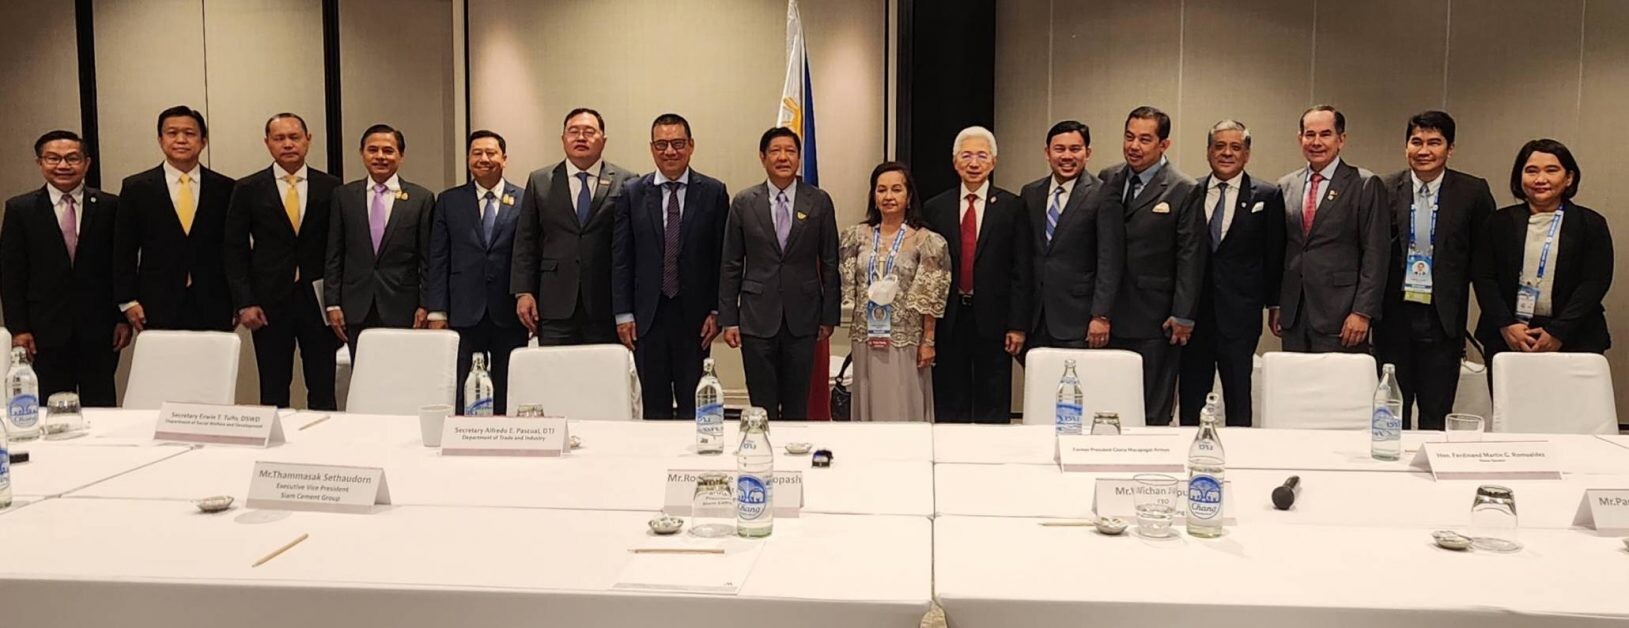 APEC 2022 Thailand เปิดโอกาสธุรกิจ  เอสซีจีพบ 3 ผู้นำประเทศที่มาร่วมประชุม  สานความสัมพันธ์ เจรจาการค้า การลงทุน หนุนเศรษฐกิจให้แข็งแกร่ง